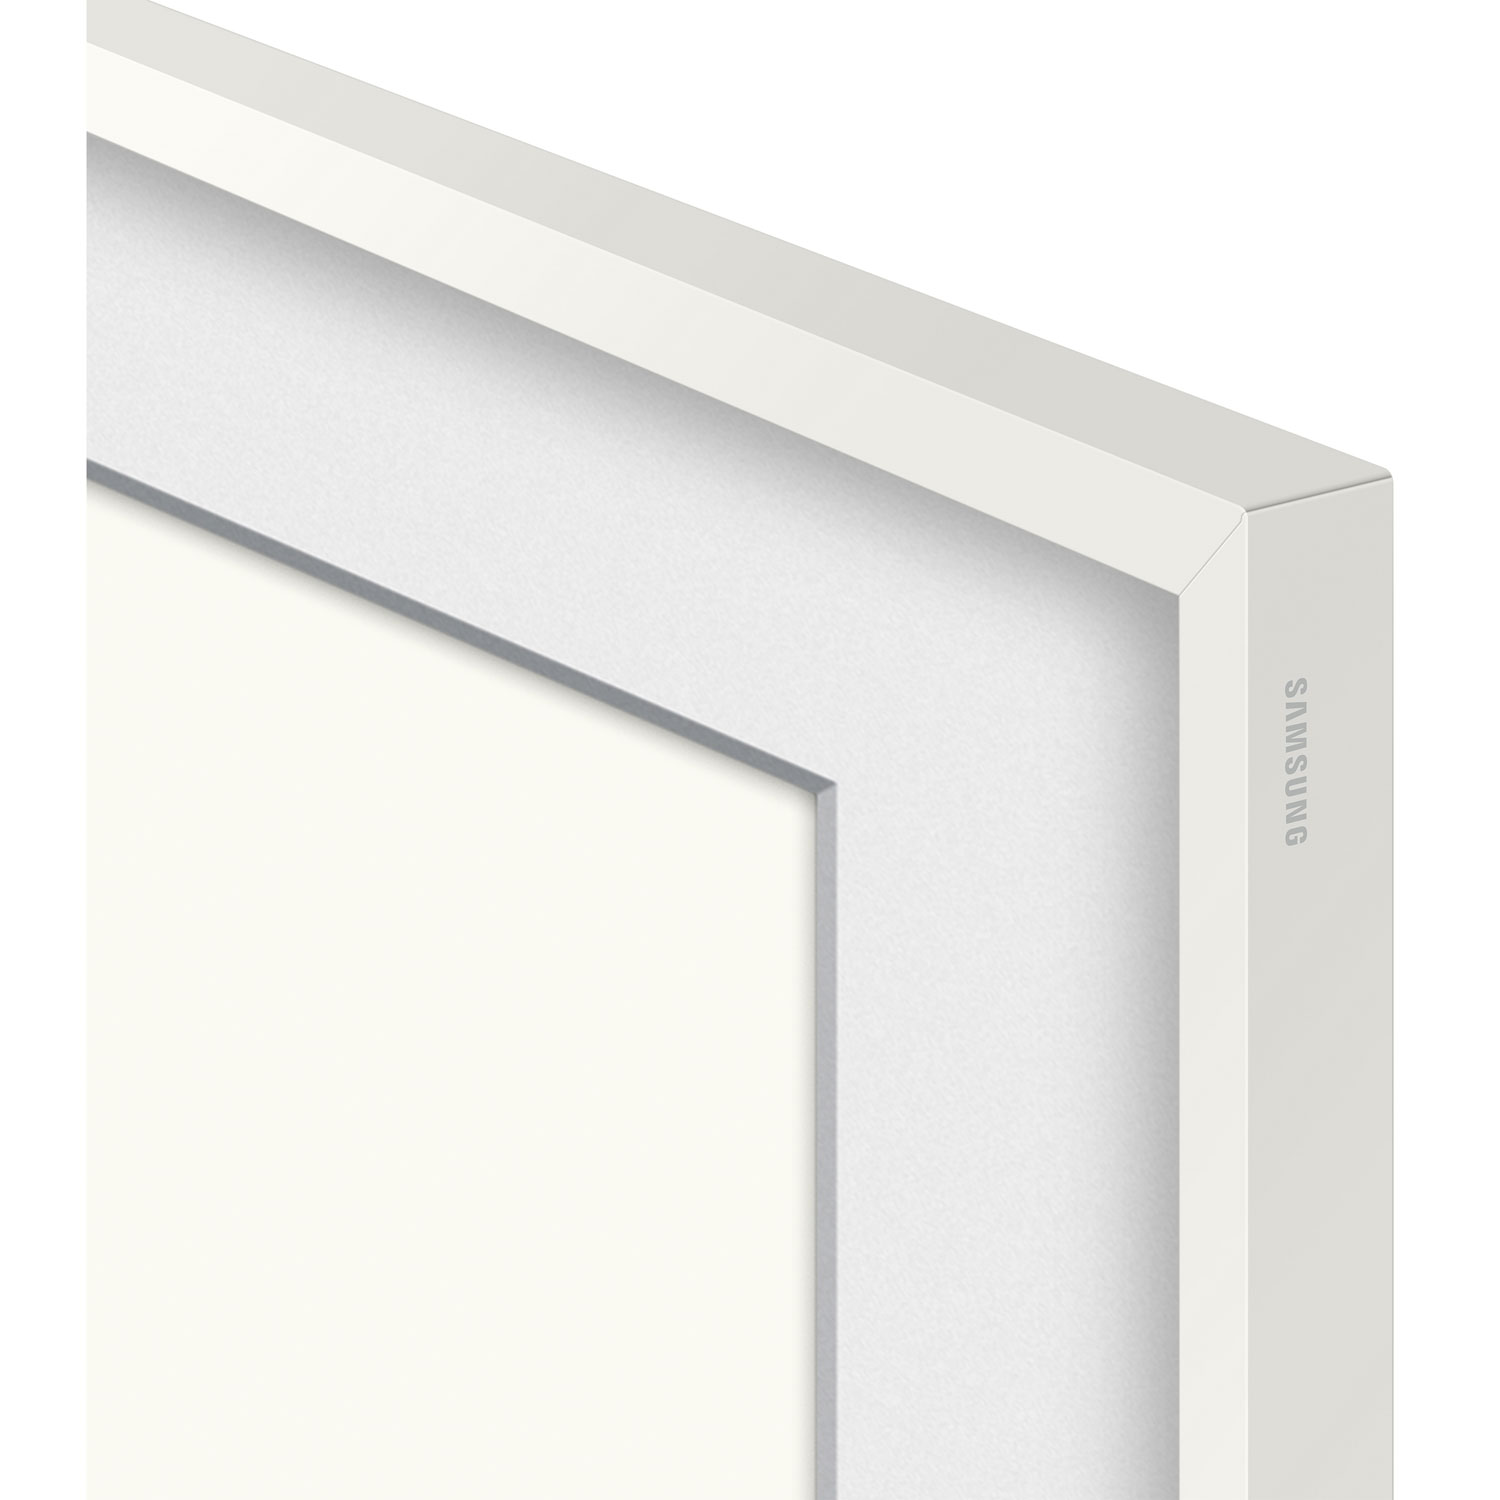 Samsung 55" Frame Bezel for The Frame TV (2021) - White